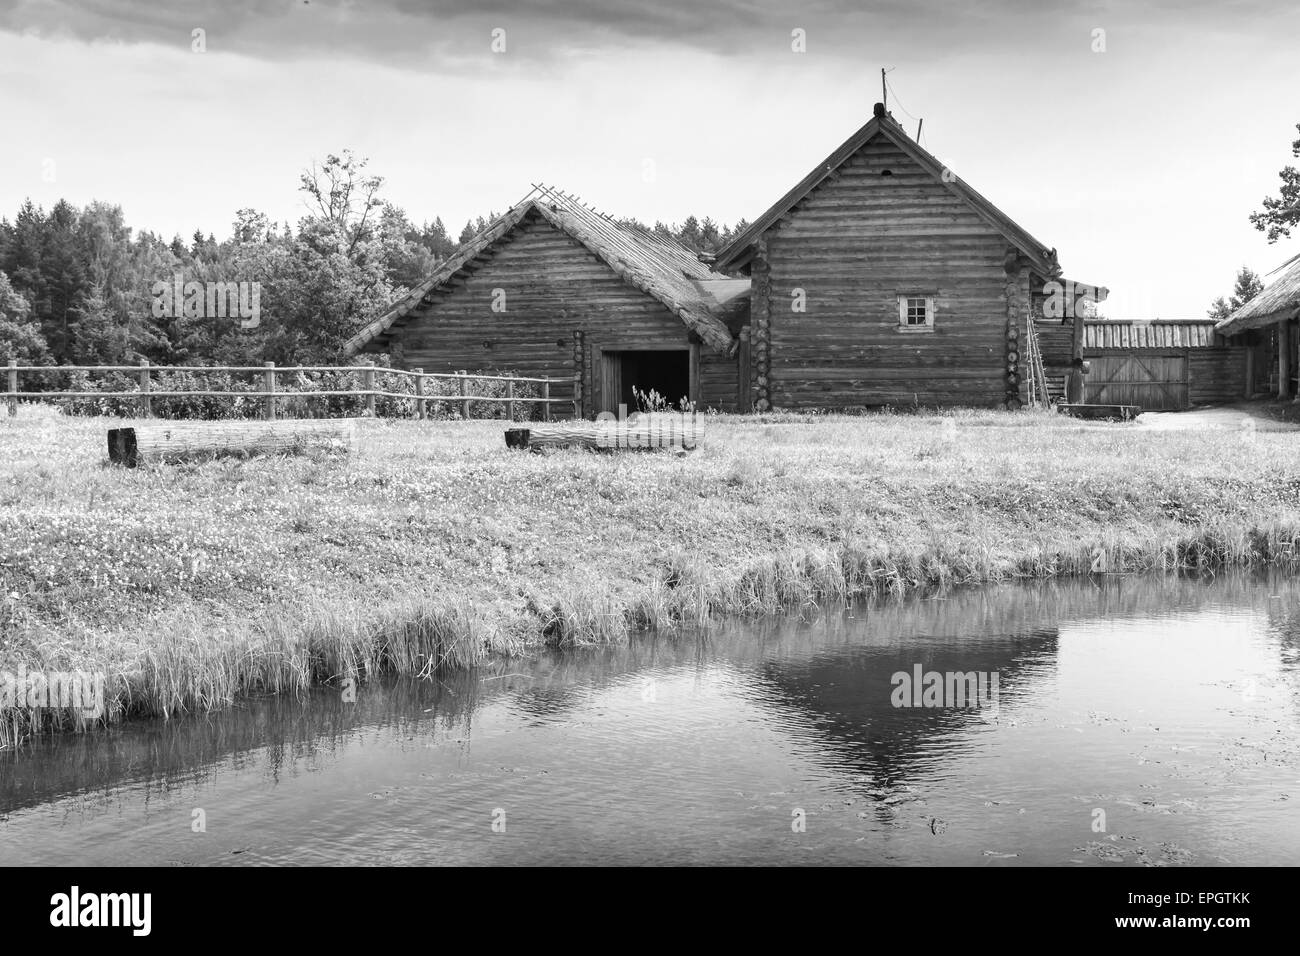 Russische ländliche Holzbaukunst Beispiel, alte Häuser auf dem See Küste, schwarz / weiß Foto Stockfoto